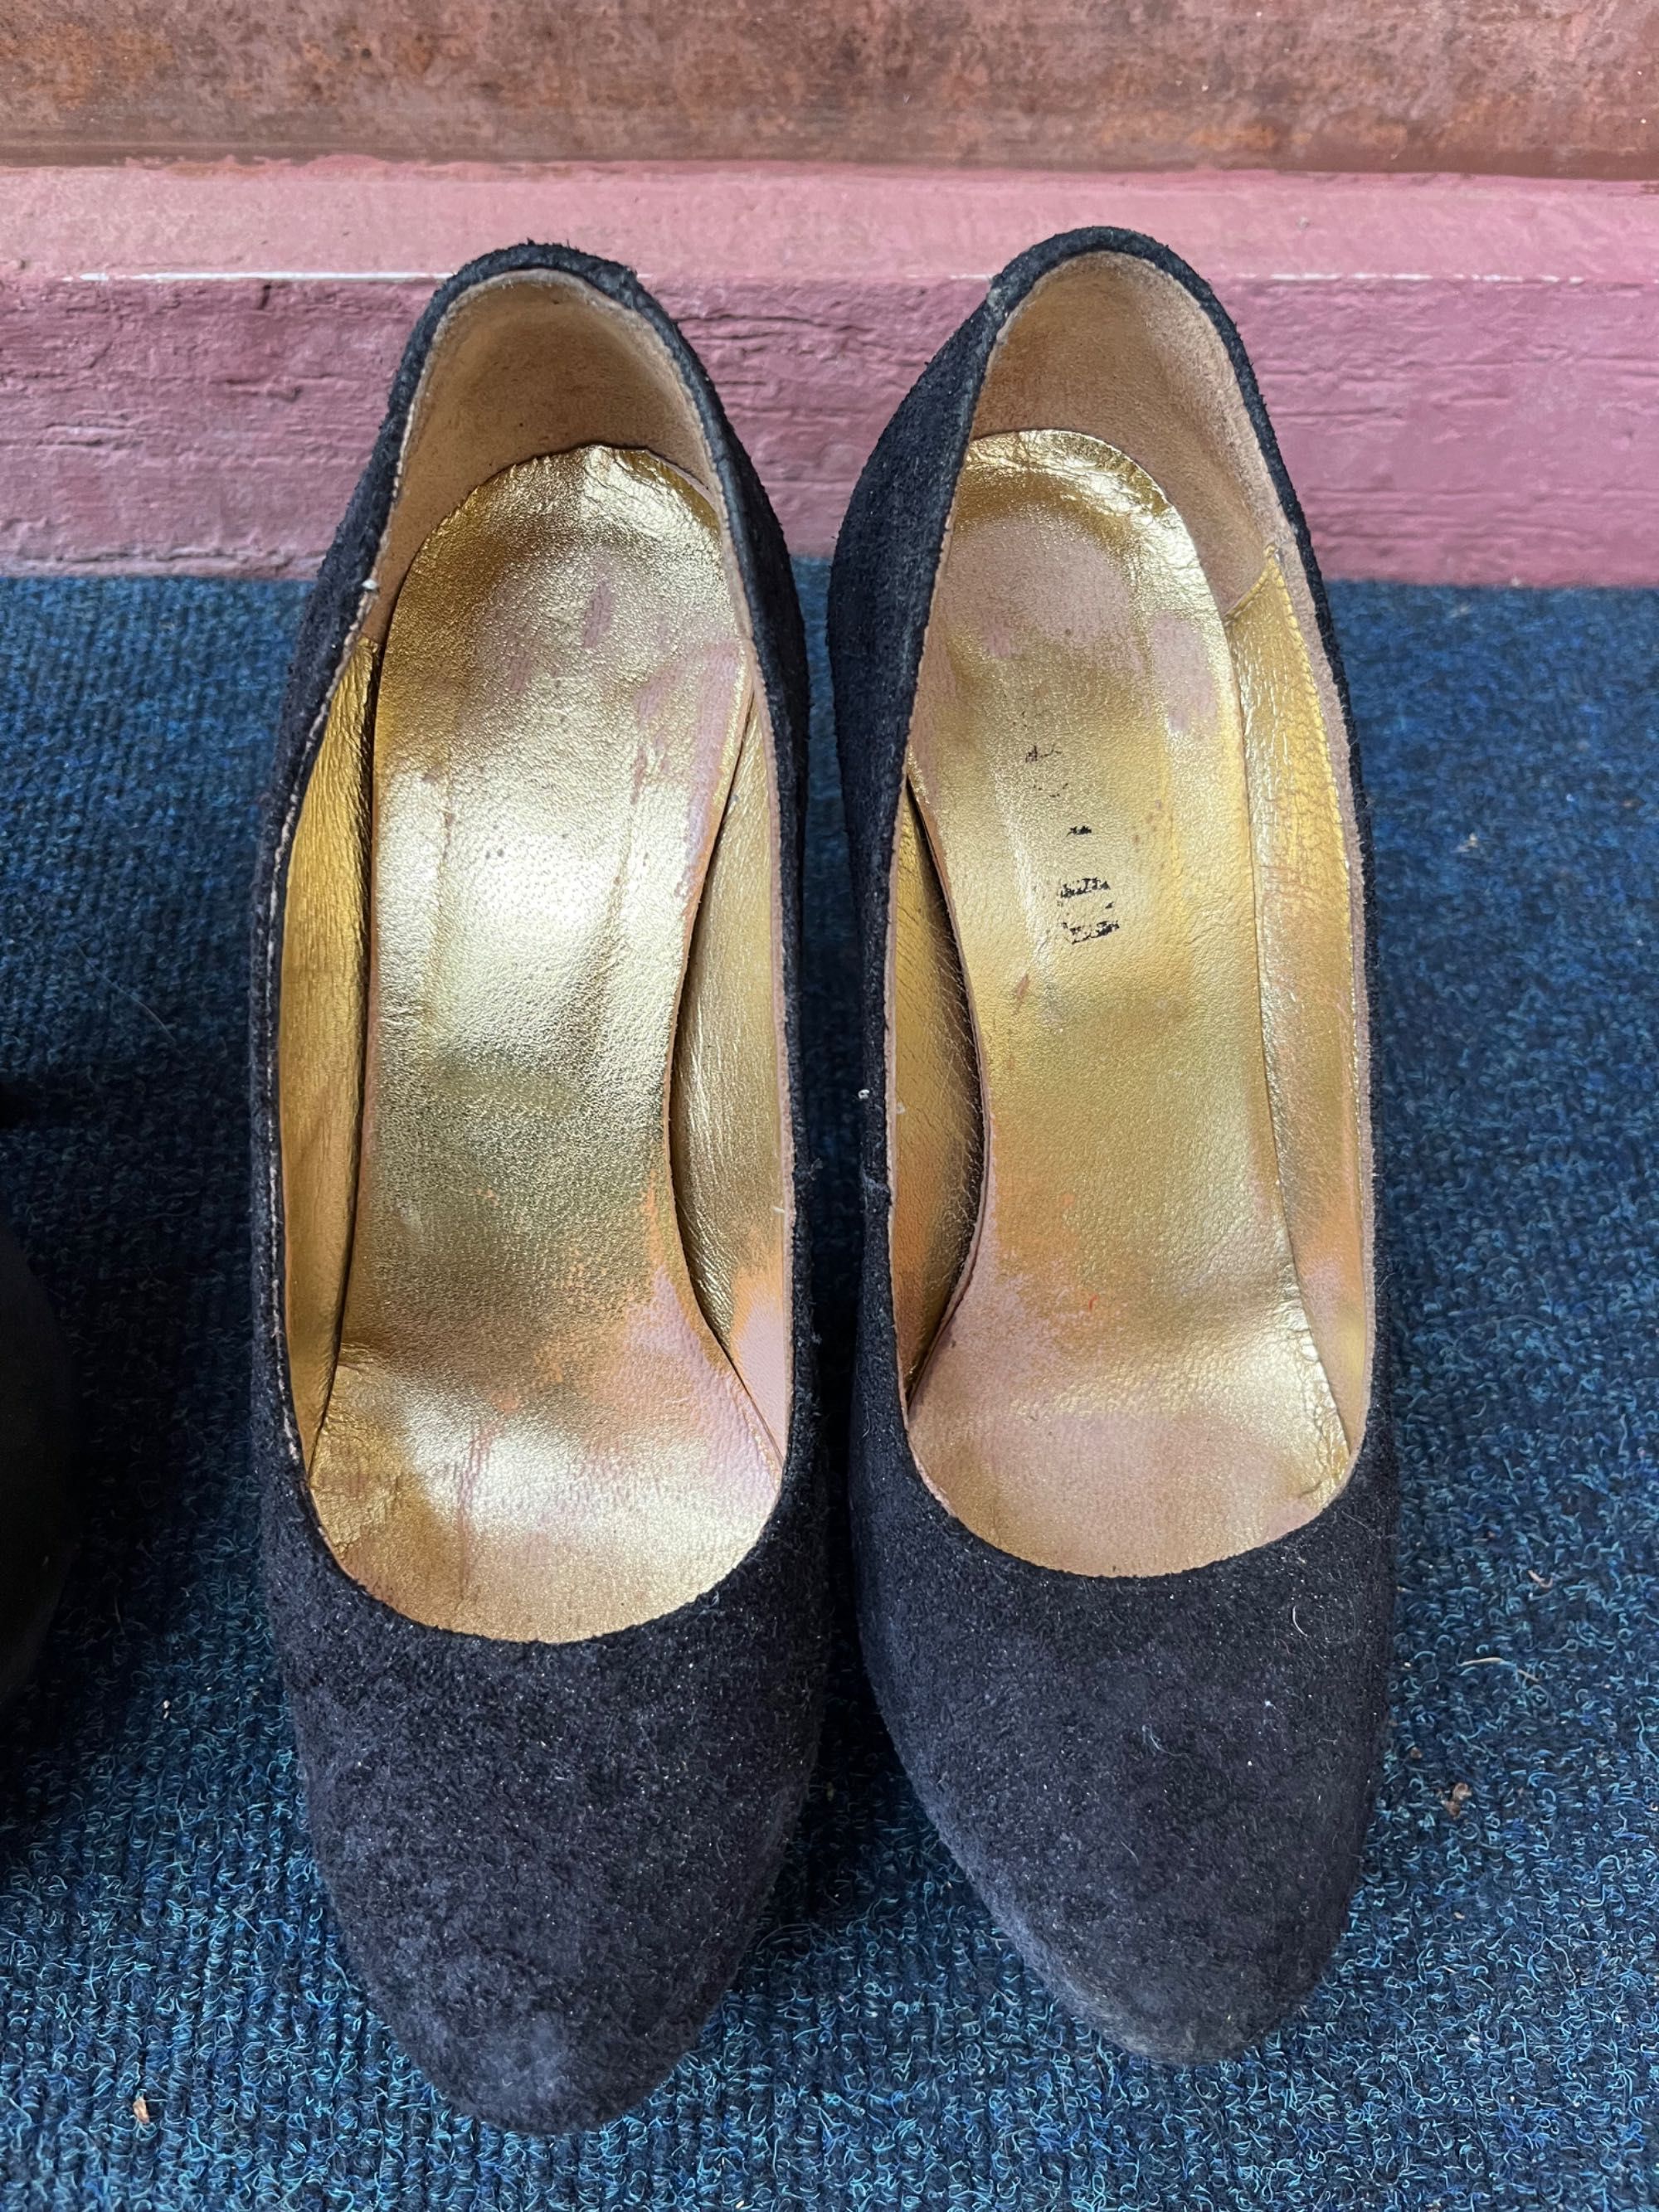 Pantofi dama 40 RON AMBELE - mărimea 36 & 37 (piele)-OK același picior